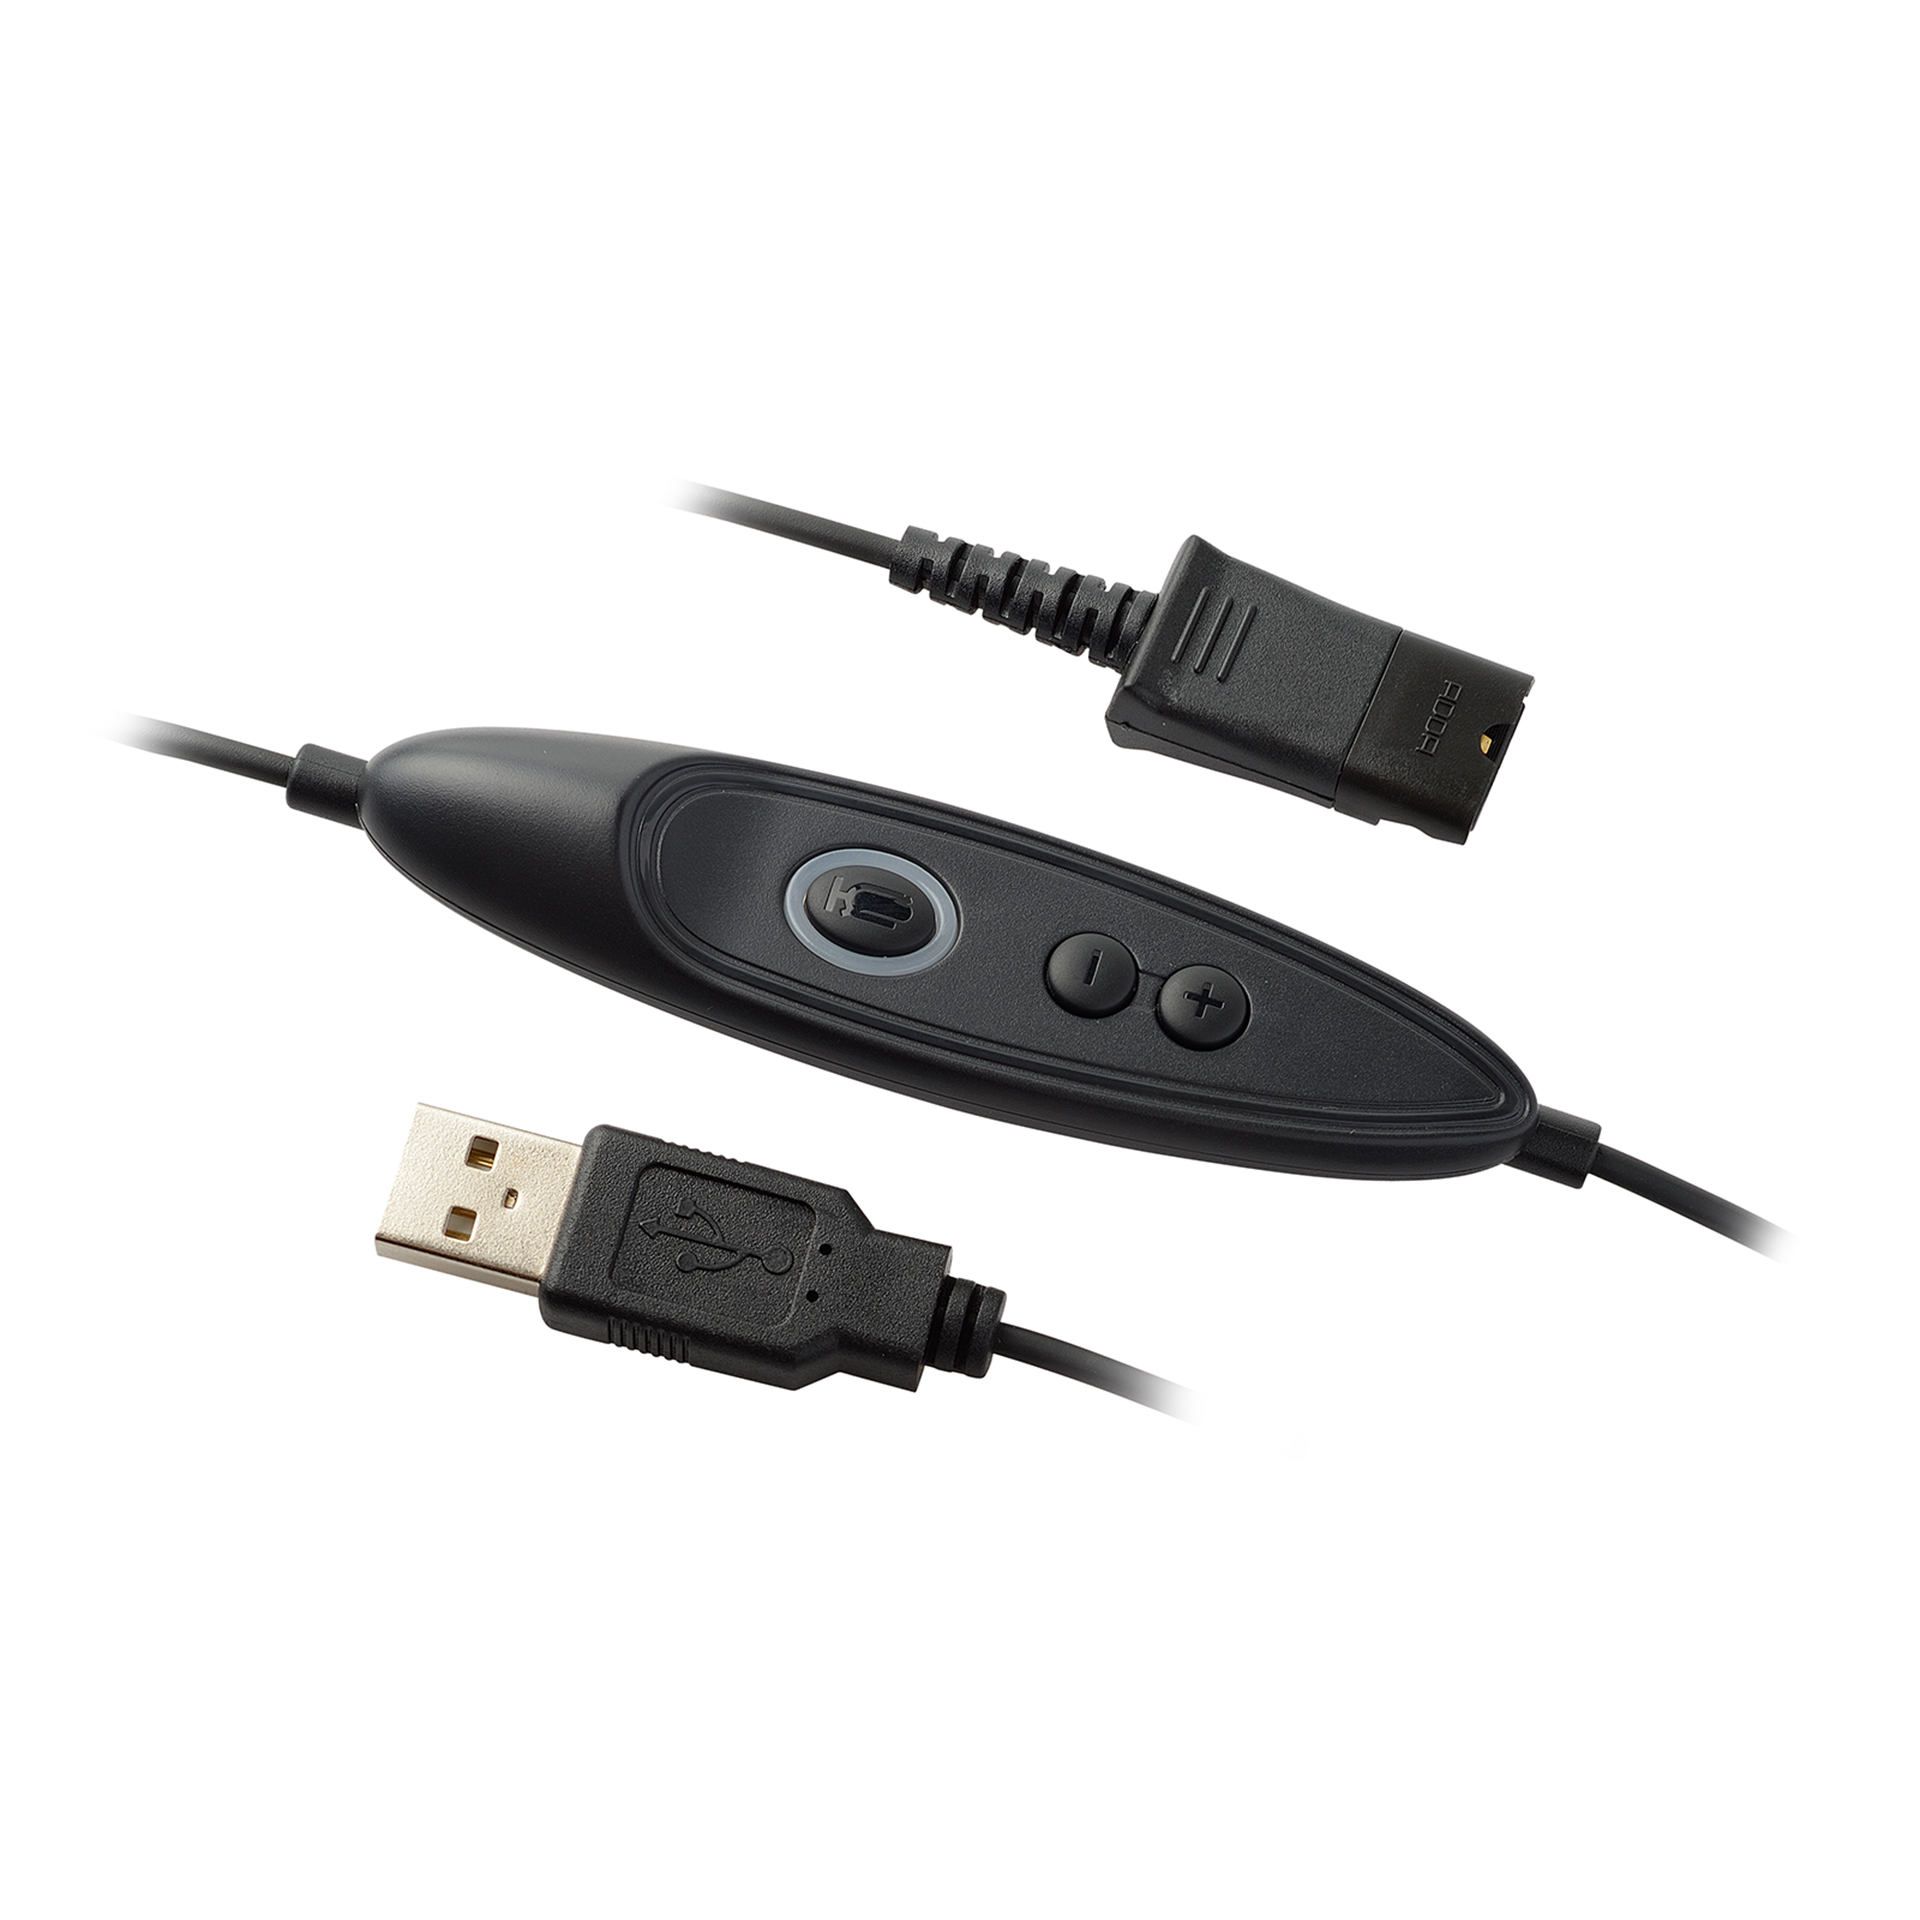 Addasound Anschlusskabel DN1011 USB 2.0 mit Mute-Taste und Lautstärkeregelung PLX-QD Stecker